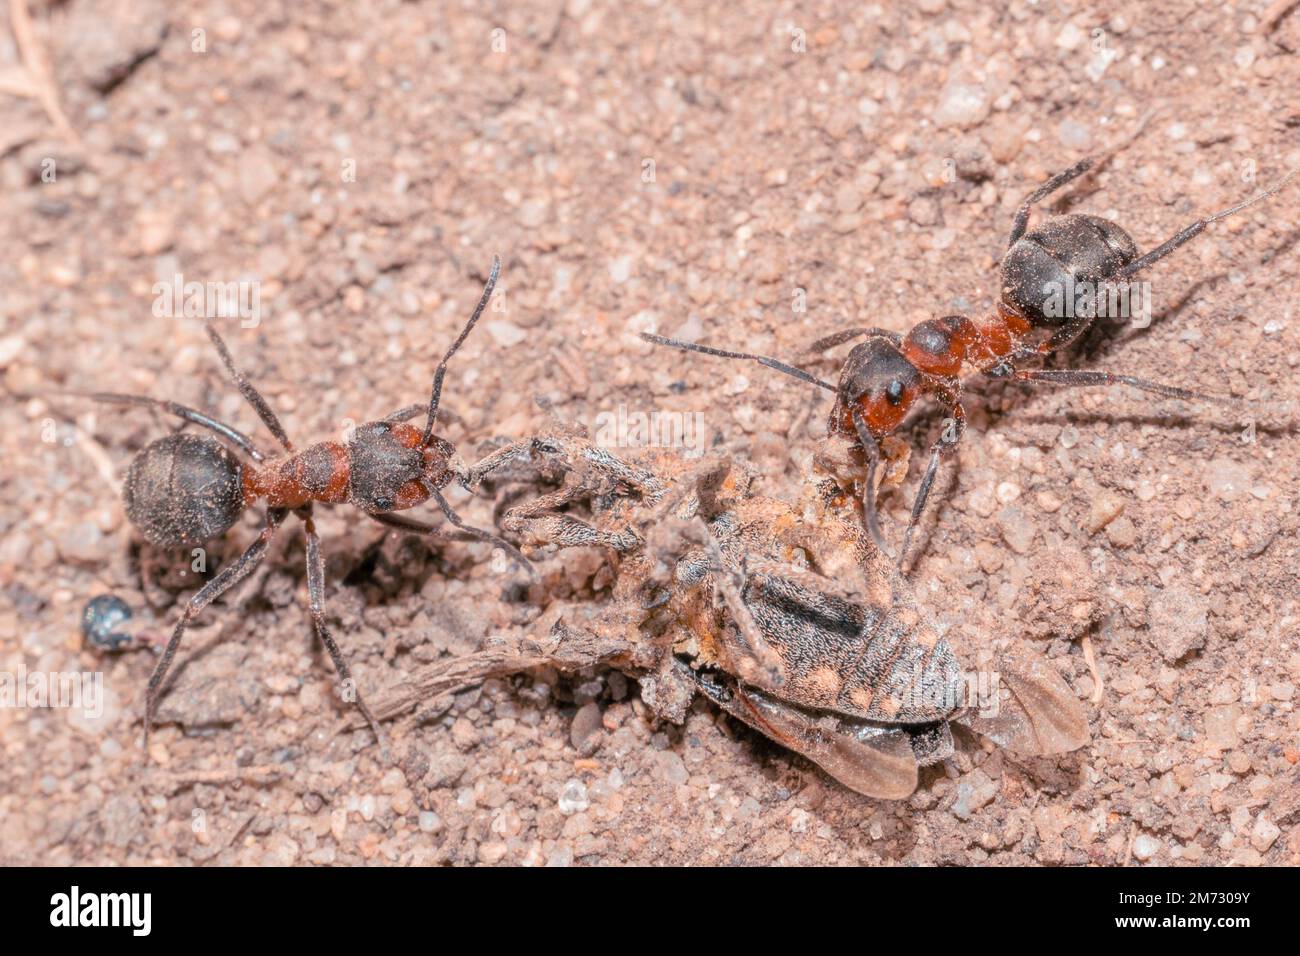 Due formiche di legno rosso formica rufa portano la loro preda di insetto sul terreno sabbioso Foto Stock